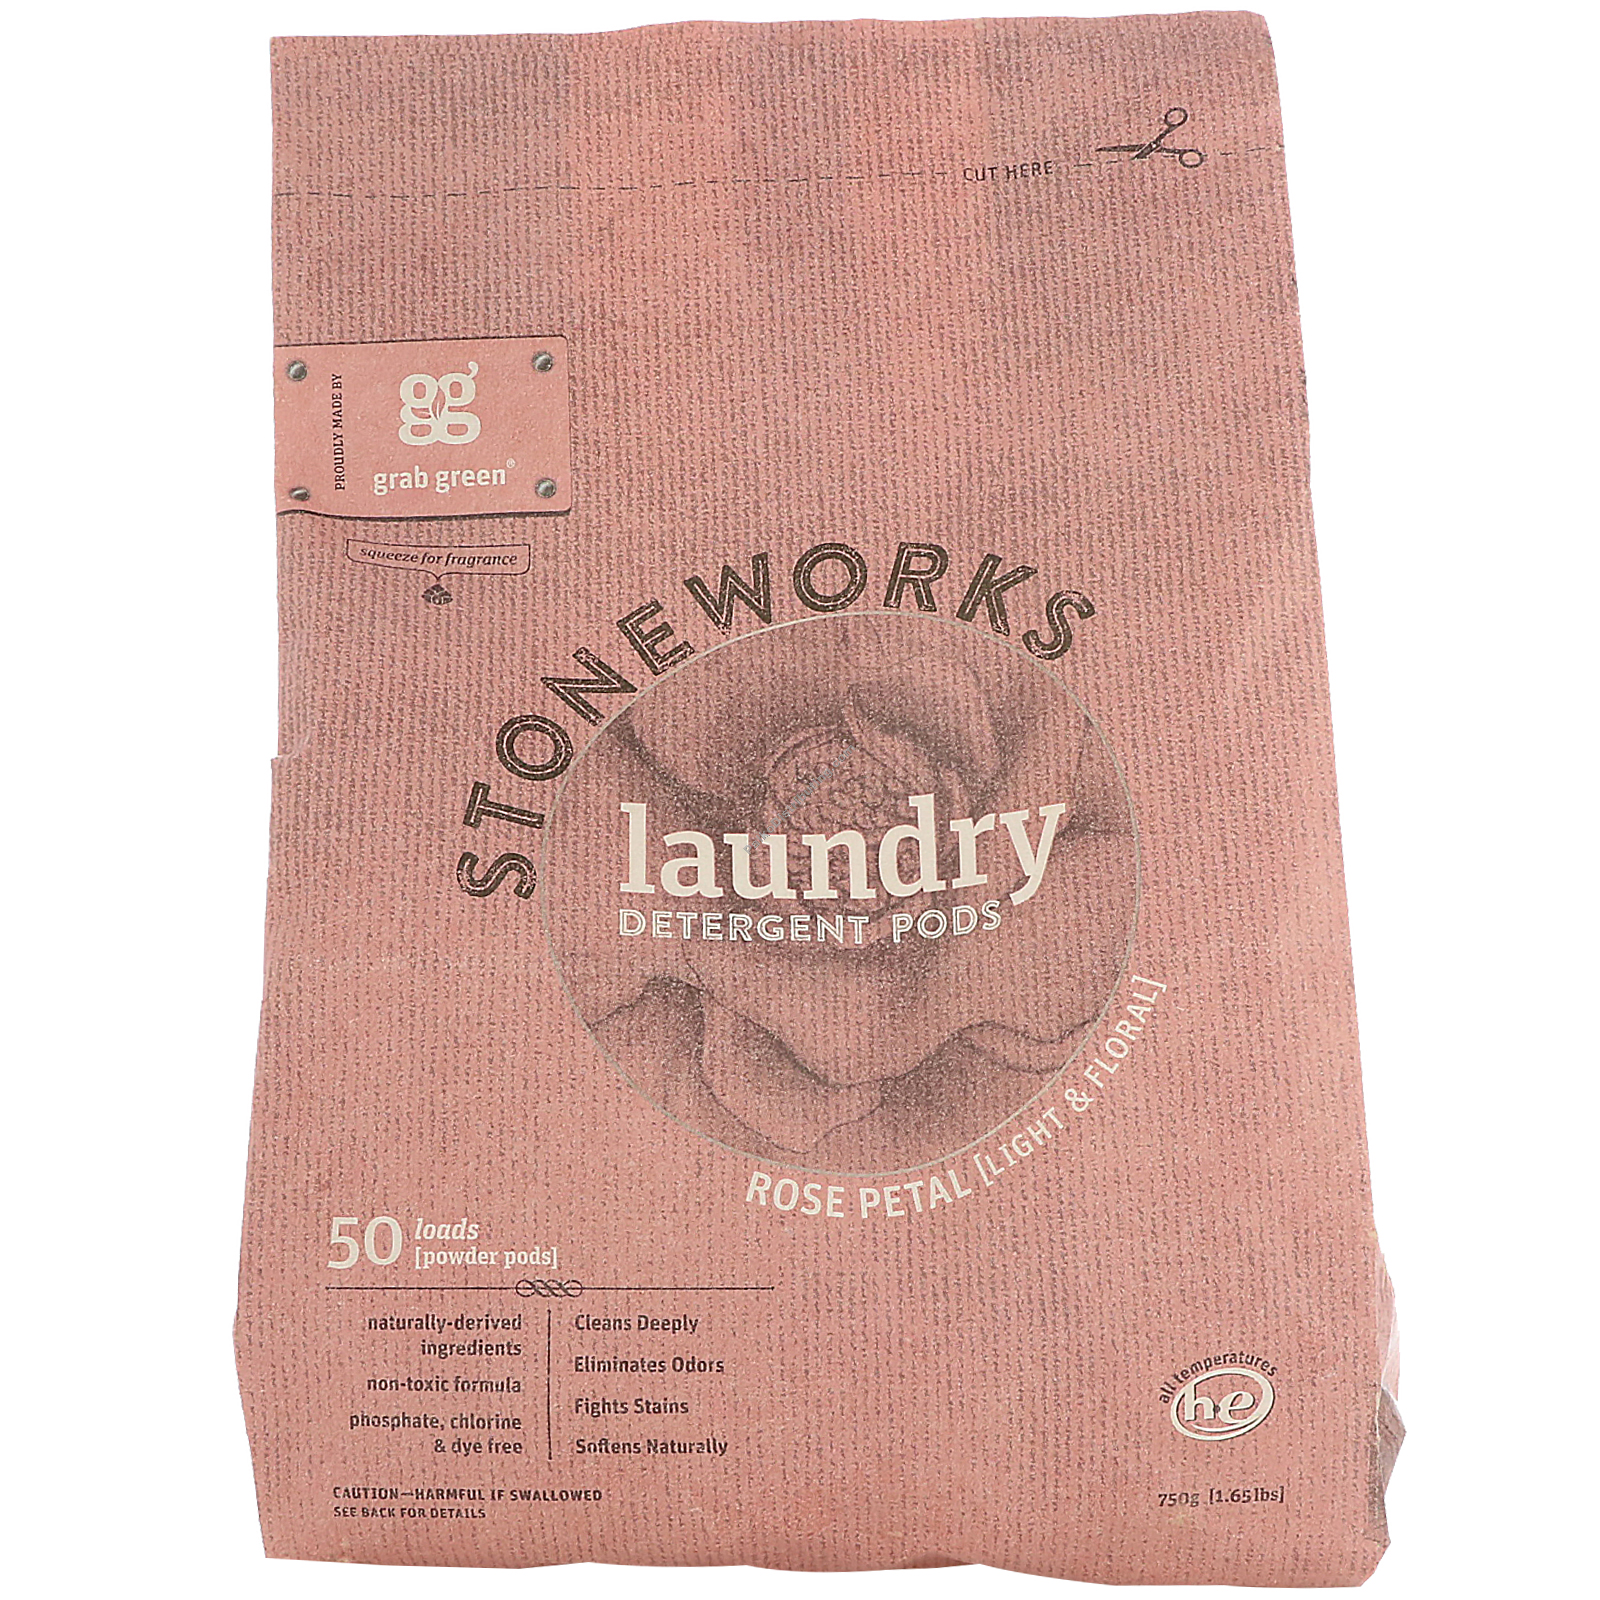 Product Image: Stoneworks Laundry Pods Rose Petal